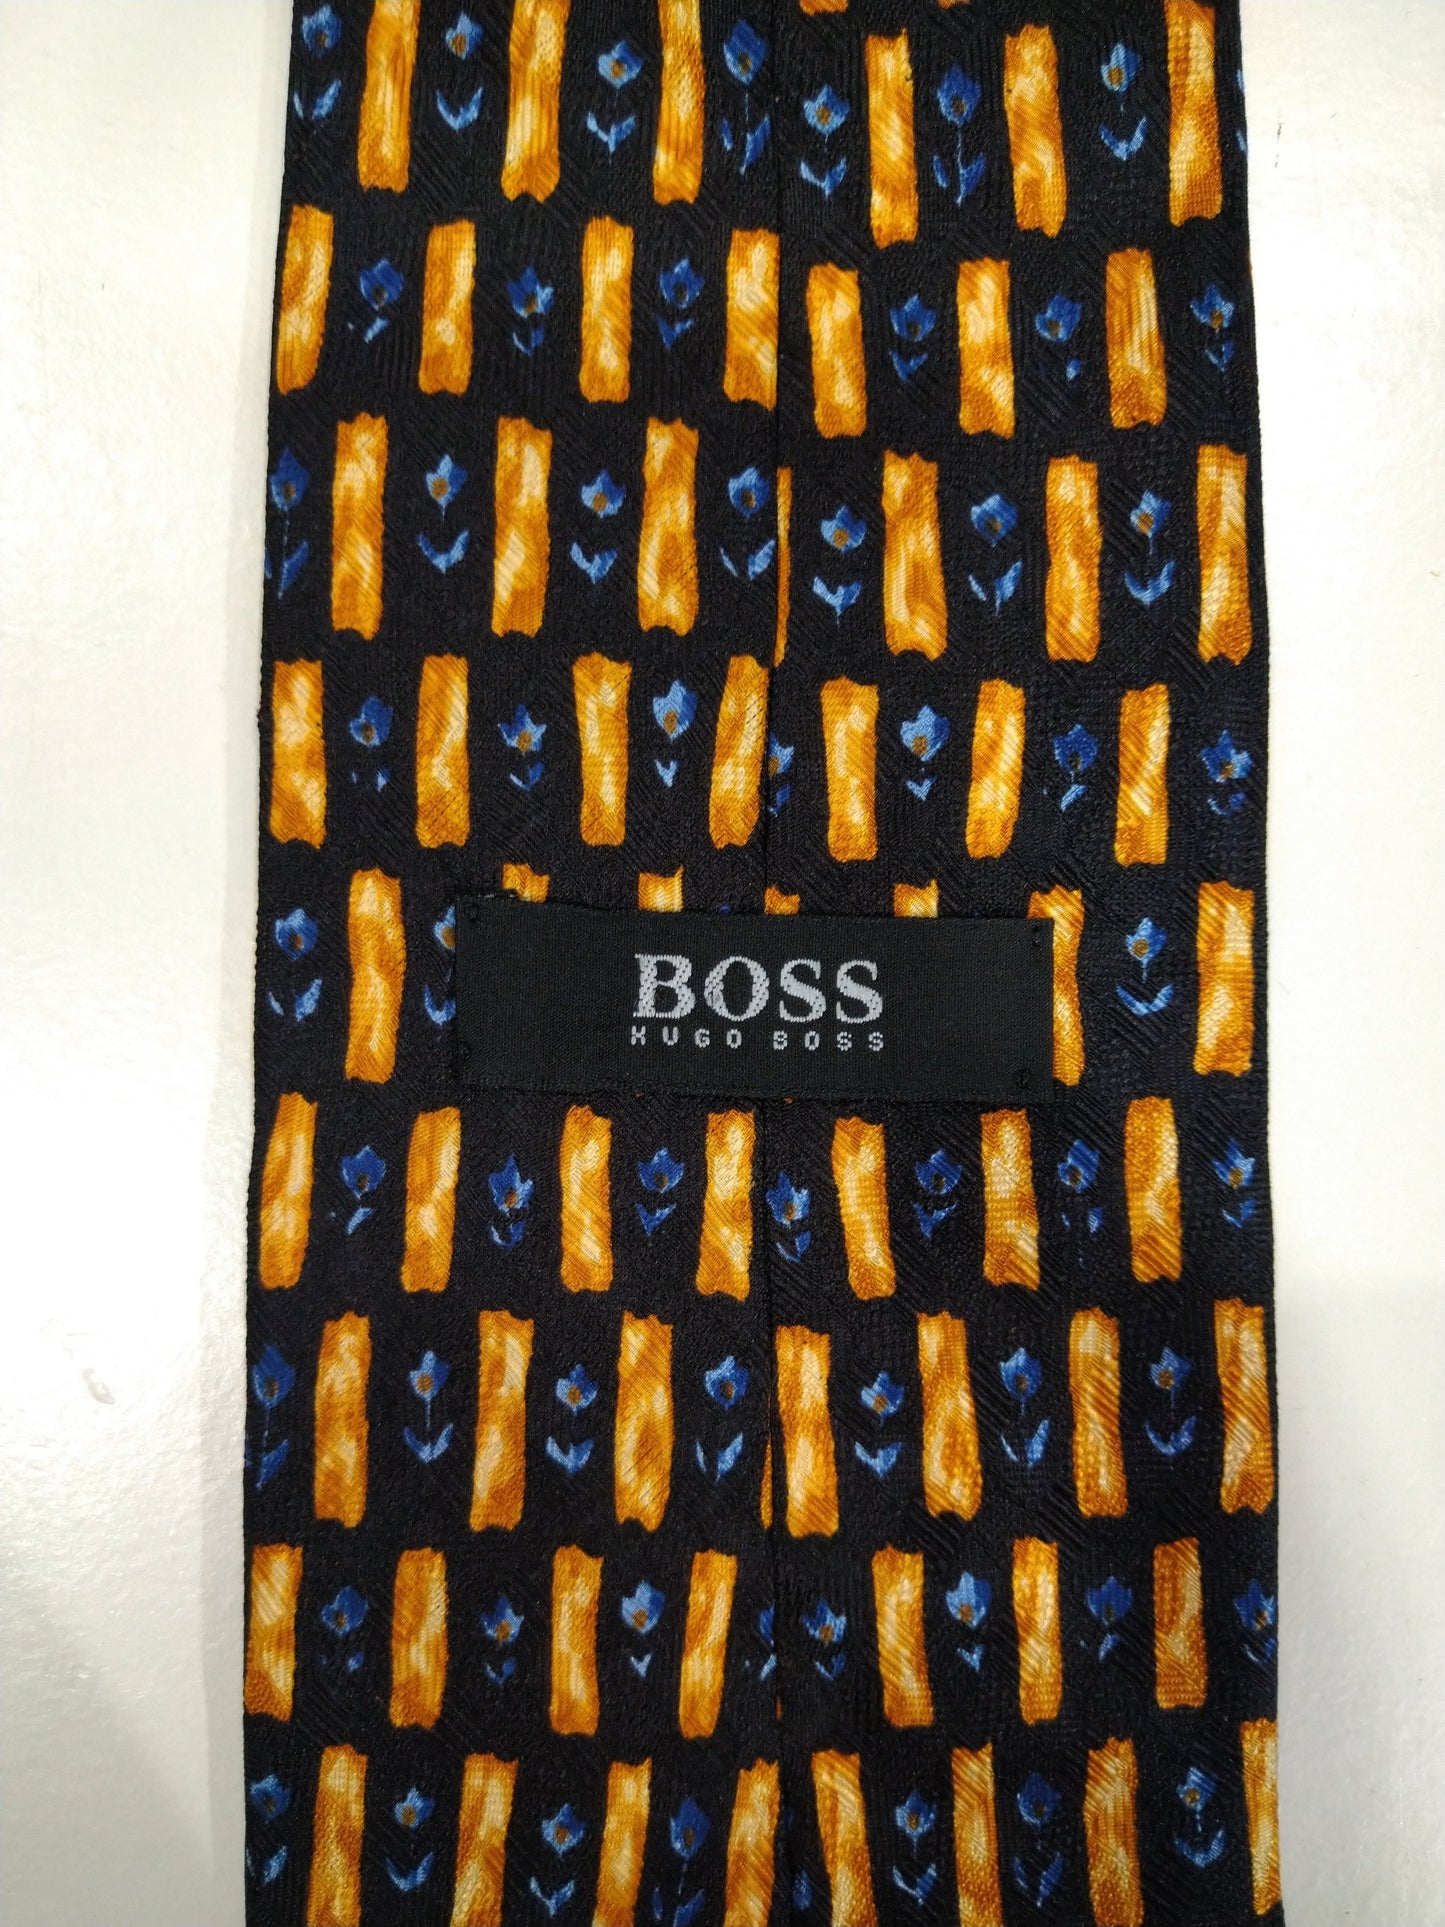 Vintage Hugo Boss Silk Tie. Motif bleu / noir / jaune.